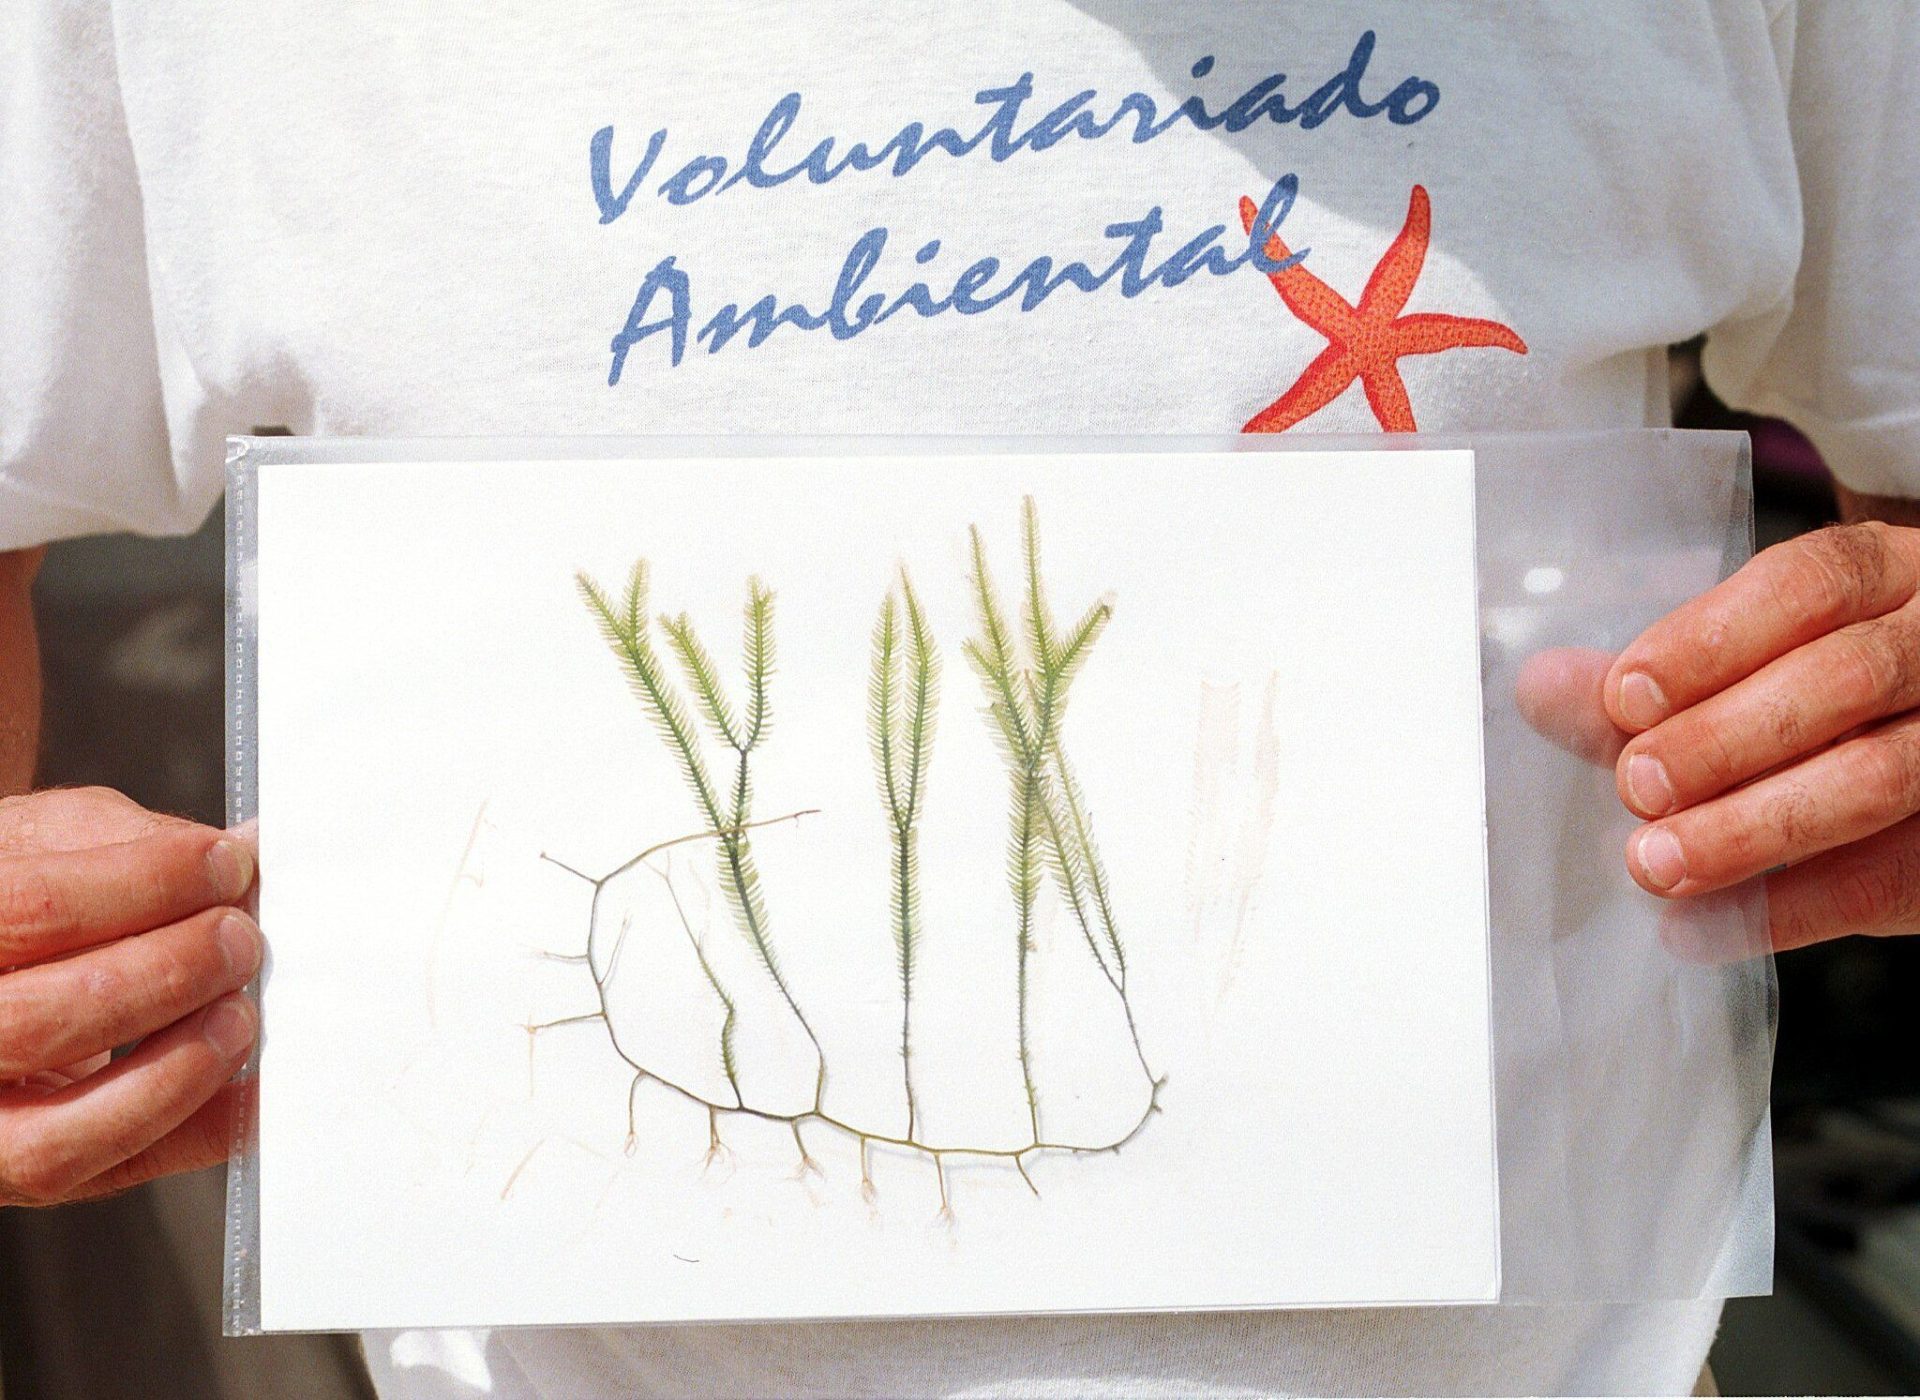 Un voluntario ambiental muestra a la cámara un dibujo de la "Caulerpa taxifolia" un alga invasora del Mediterráneo